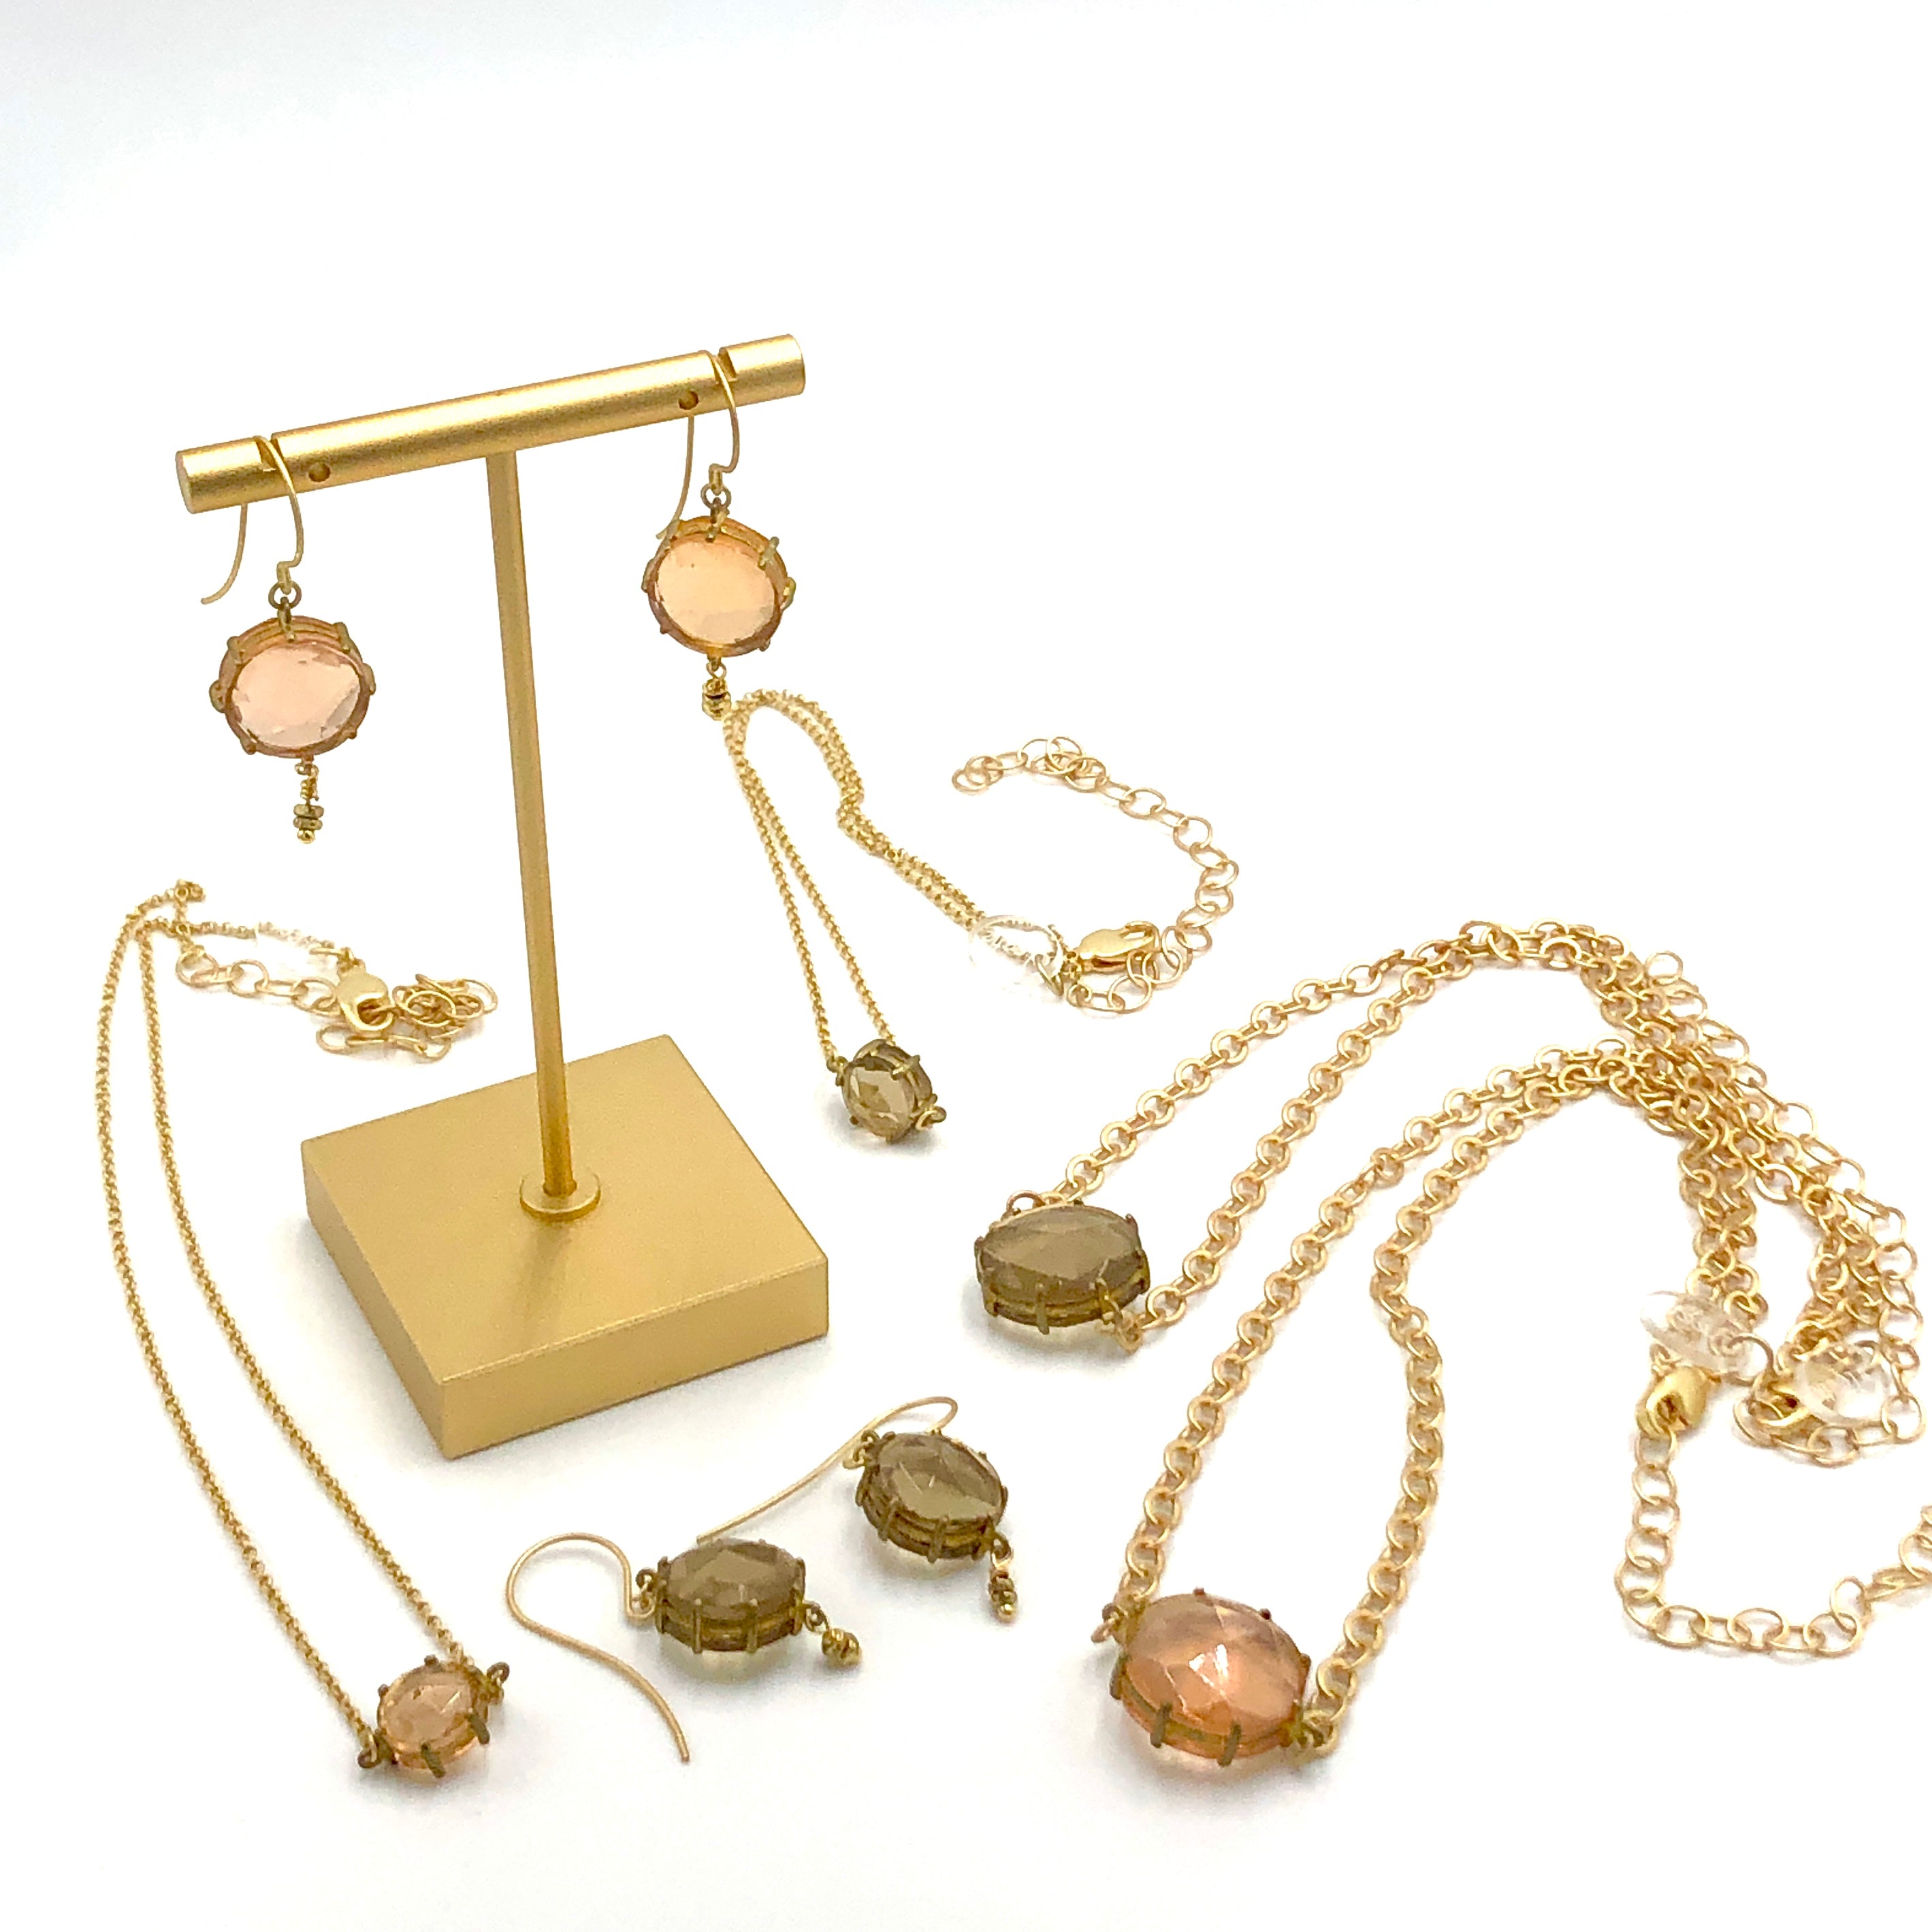 leetie heirloom jewelry collection